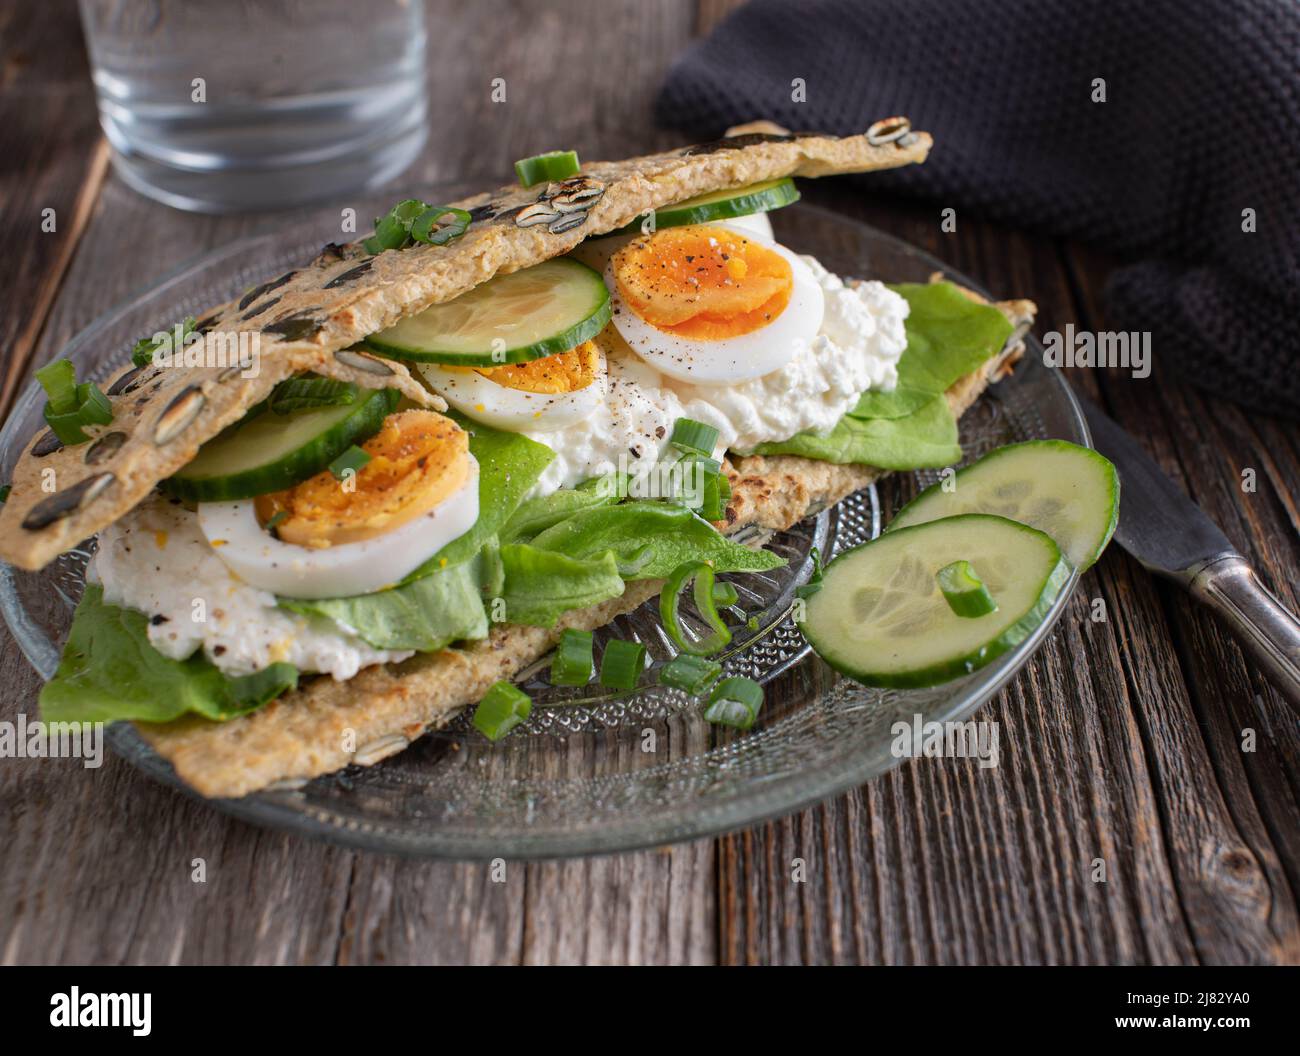 Proteinreiches Sandwich mit einem Haferflocken-Pfannkuchen, gefüllt mit Quark, gekochten Eiern und Gemüse. Stockfoto